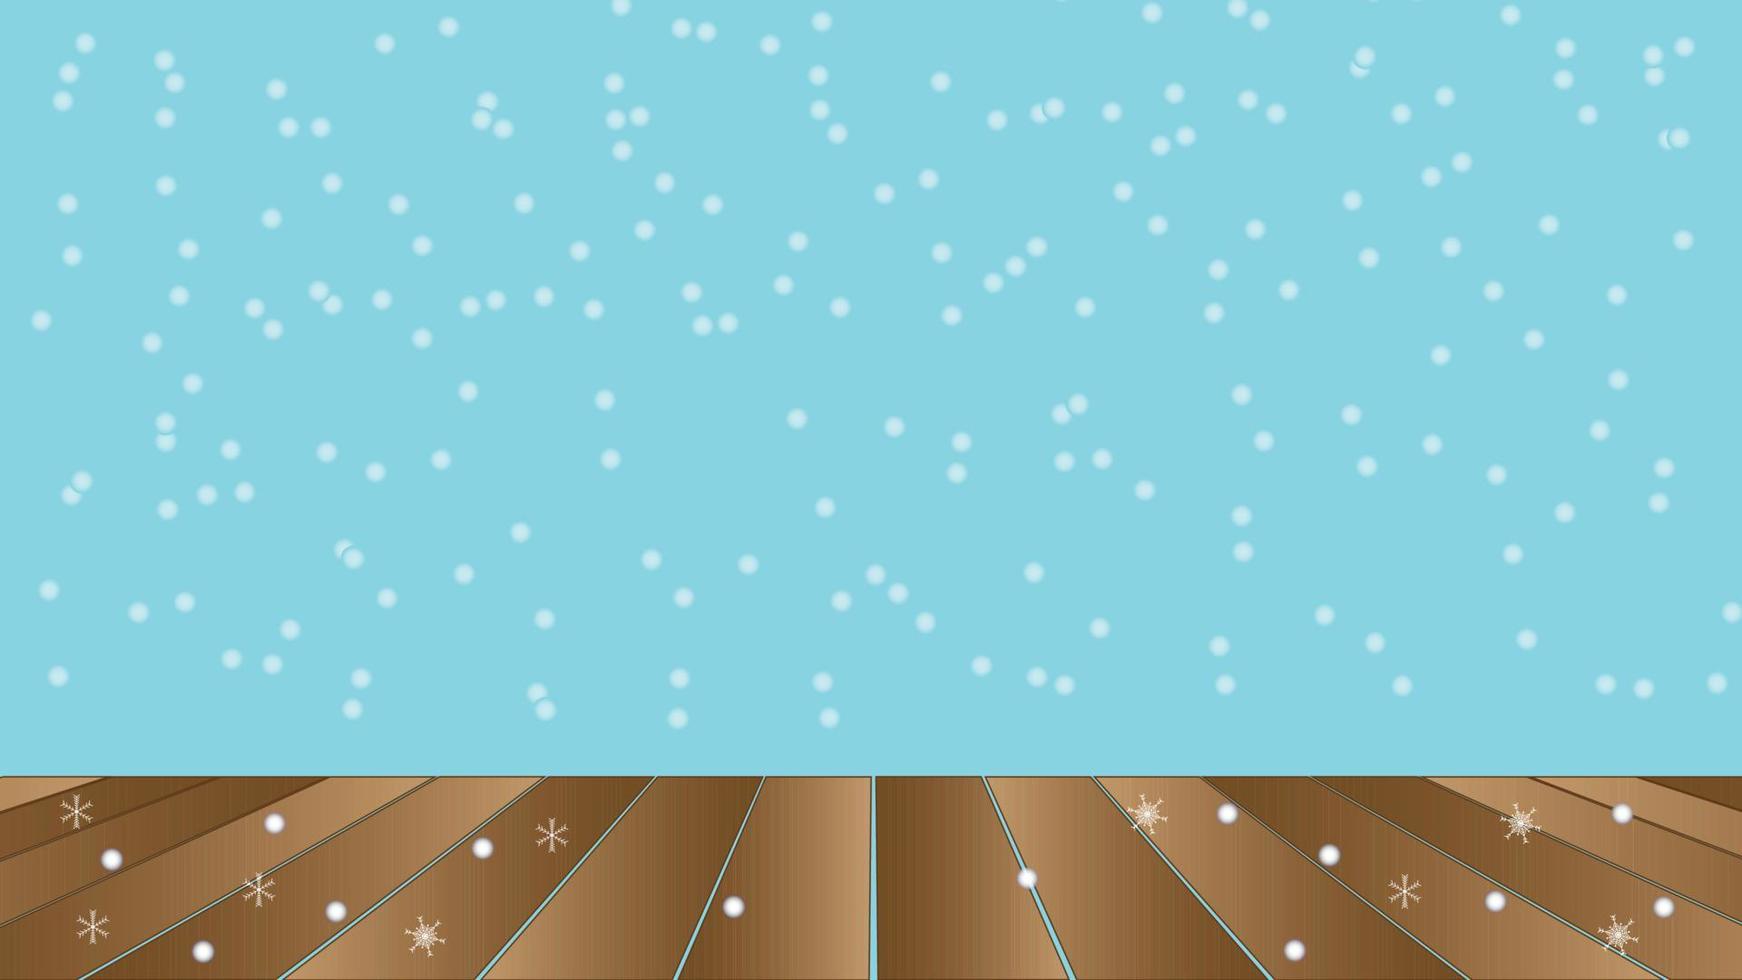 queda de neve com borrão de luz estrela com piso de madeira para mostrar produto 3d vector abstrato azul